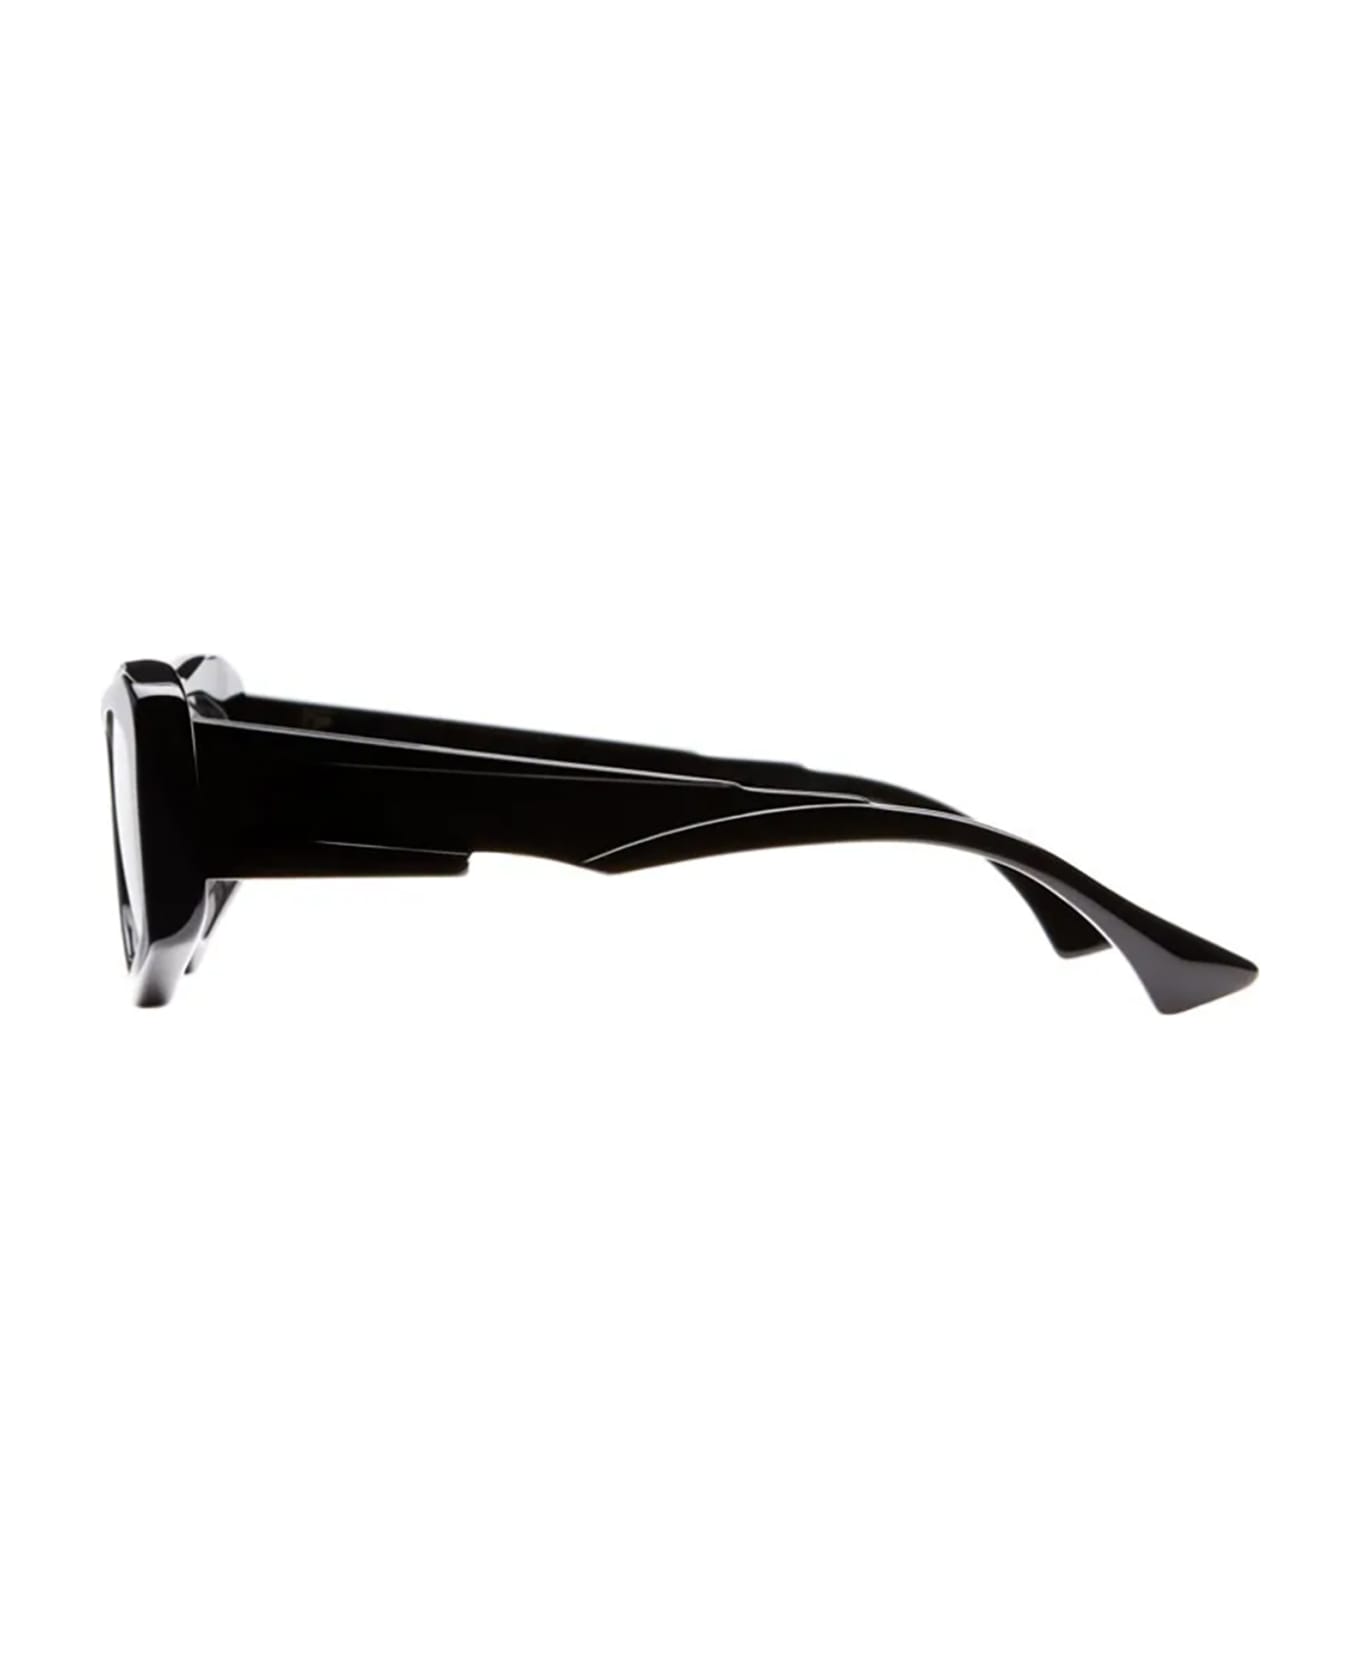 Kuboraum F6 Sunglasses - Bso サングラス